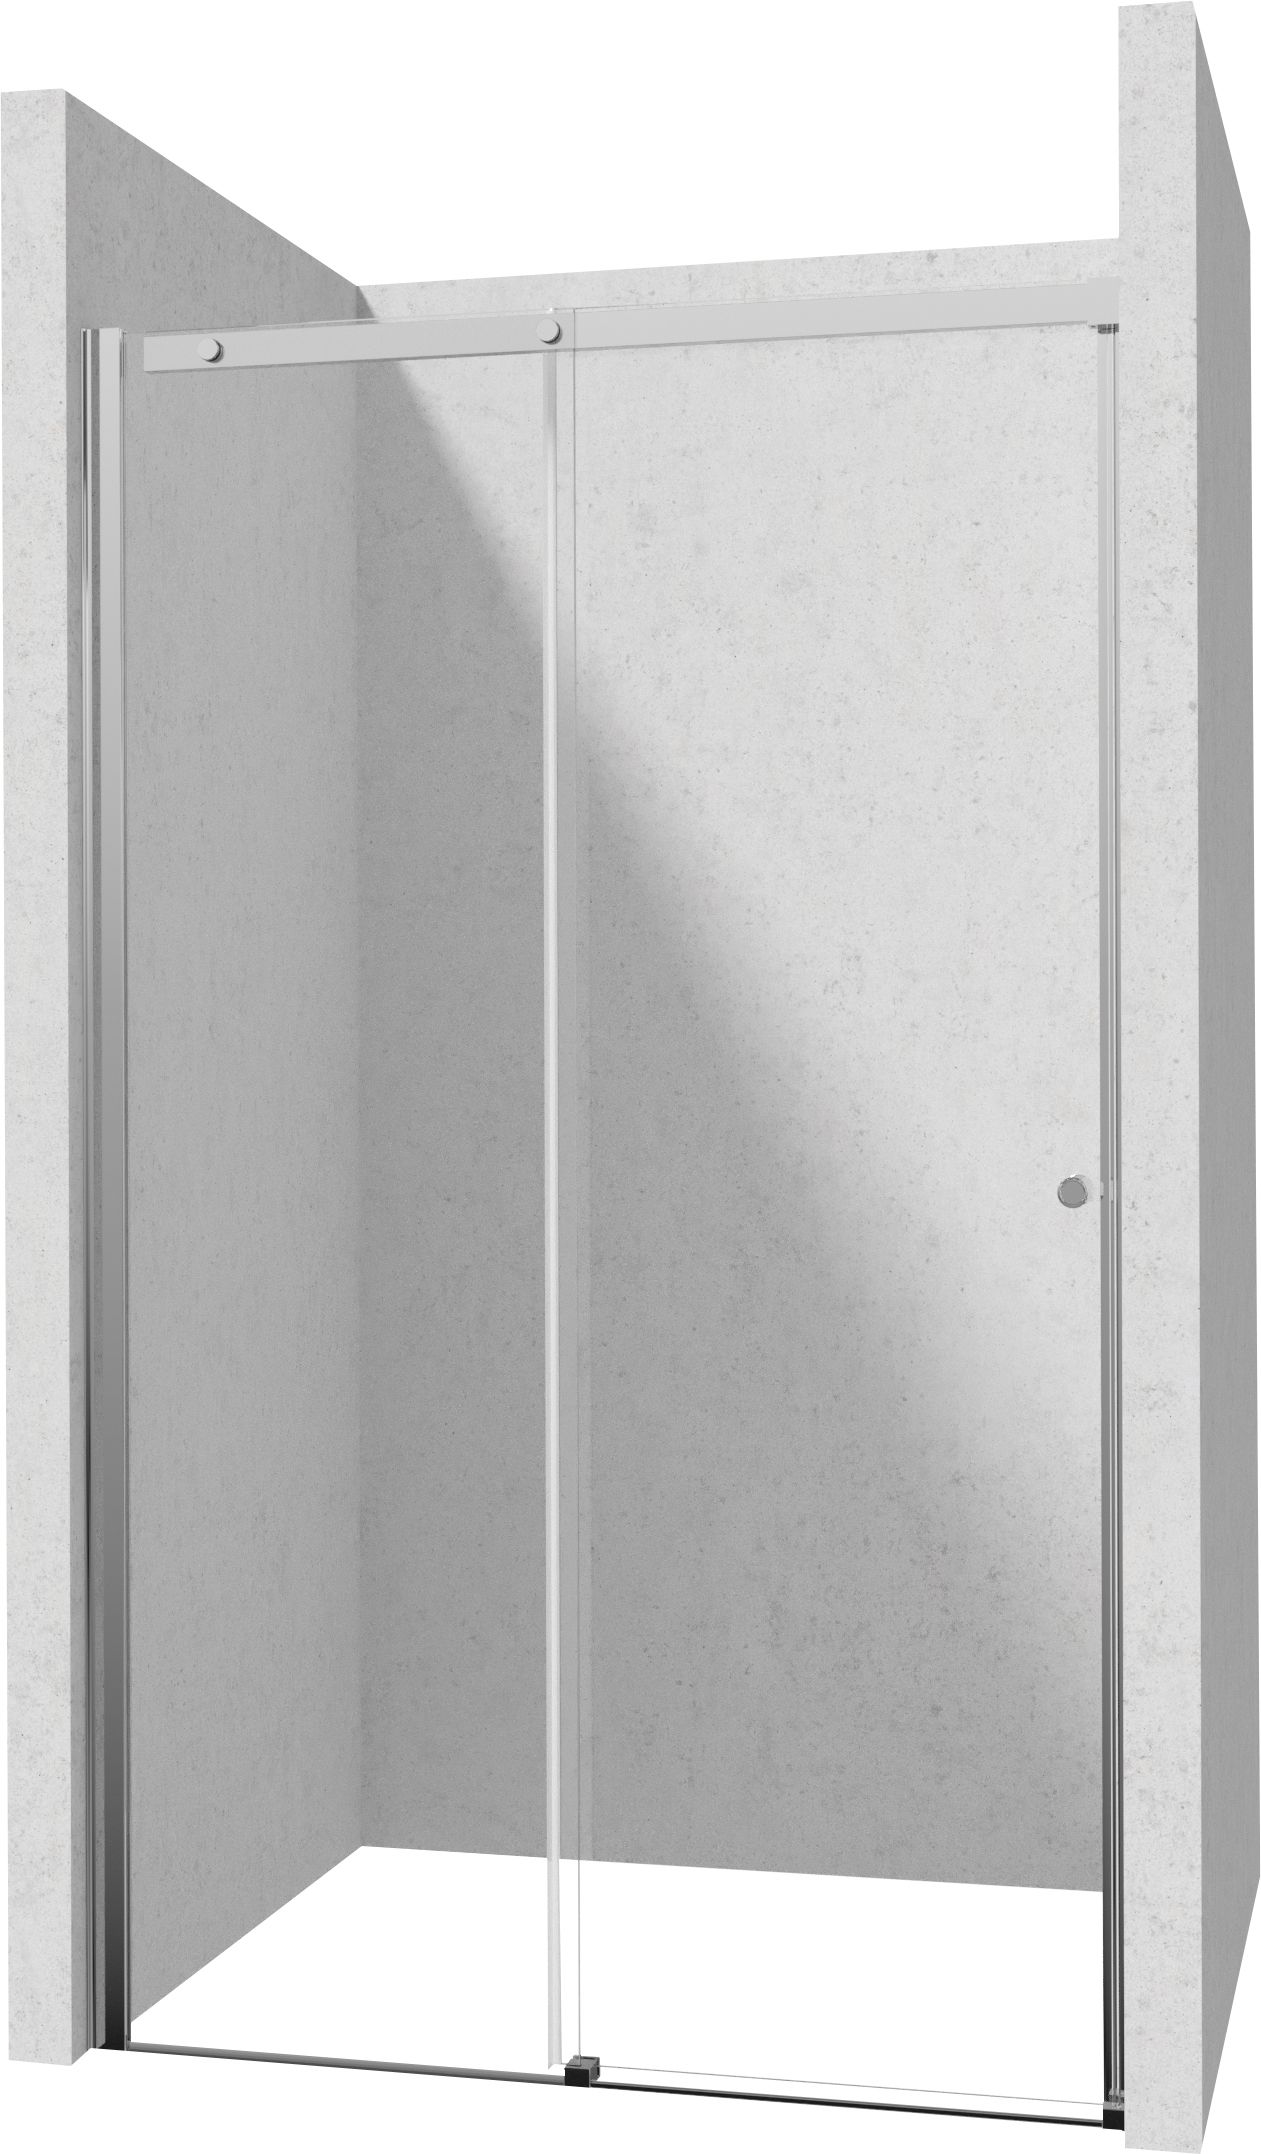 Drzwi prysznicowe 120 cm - przesuwne - KTSP012P - Główne zdjęcie produktowe